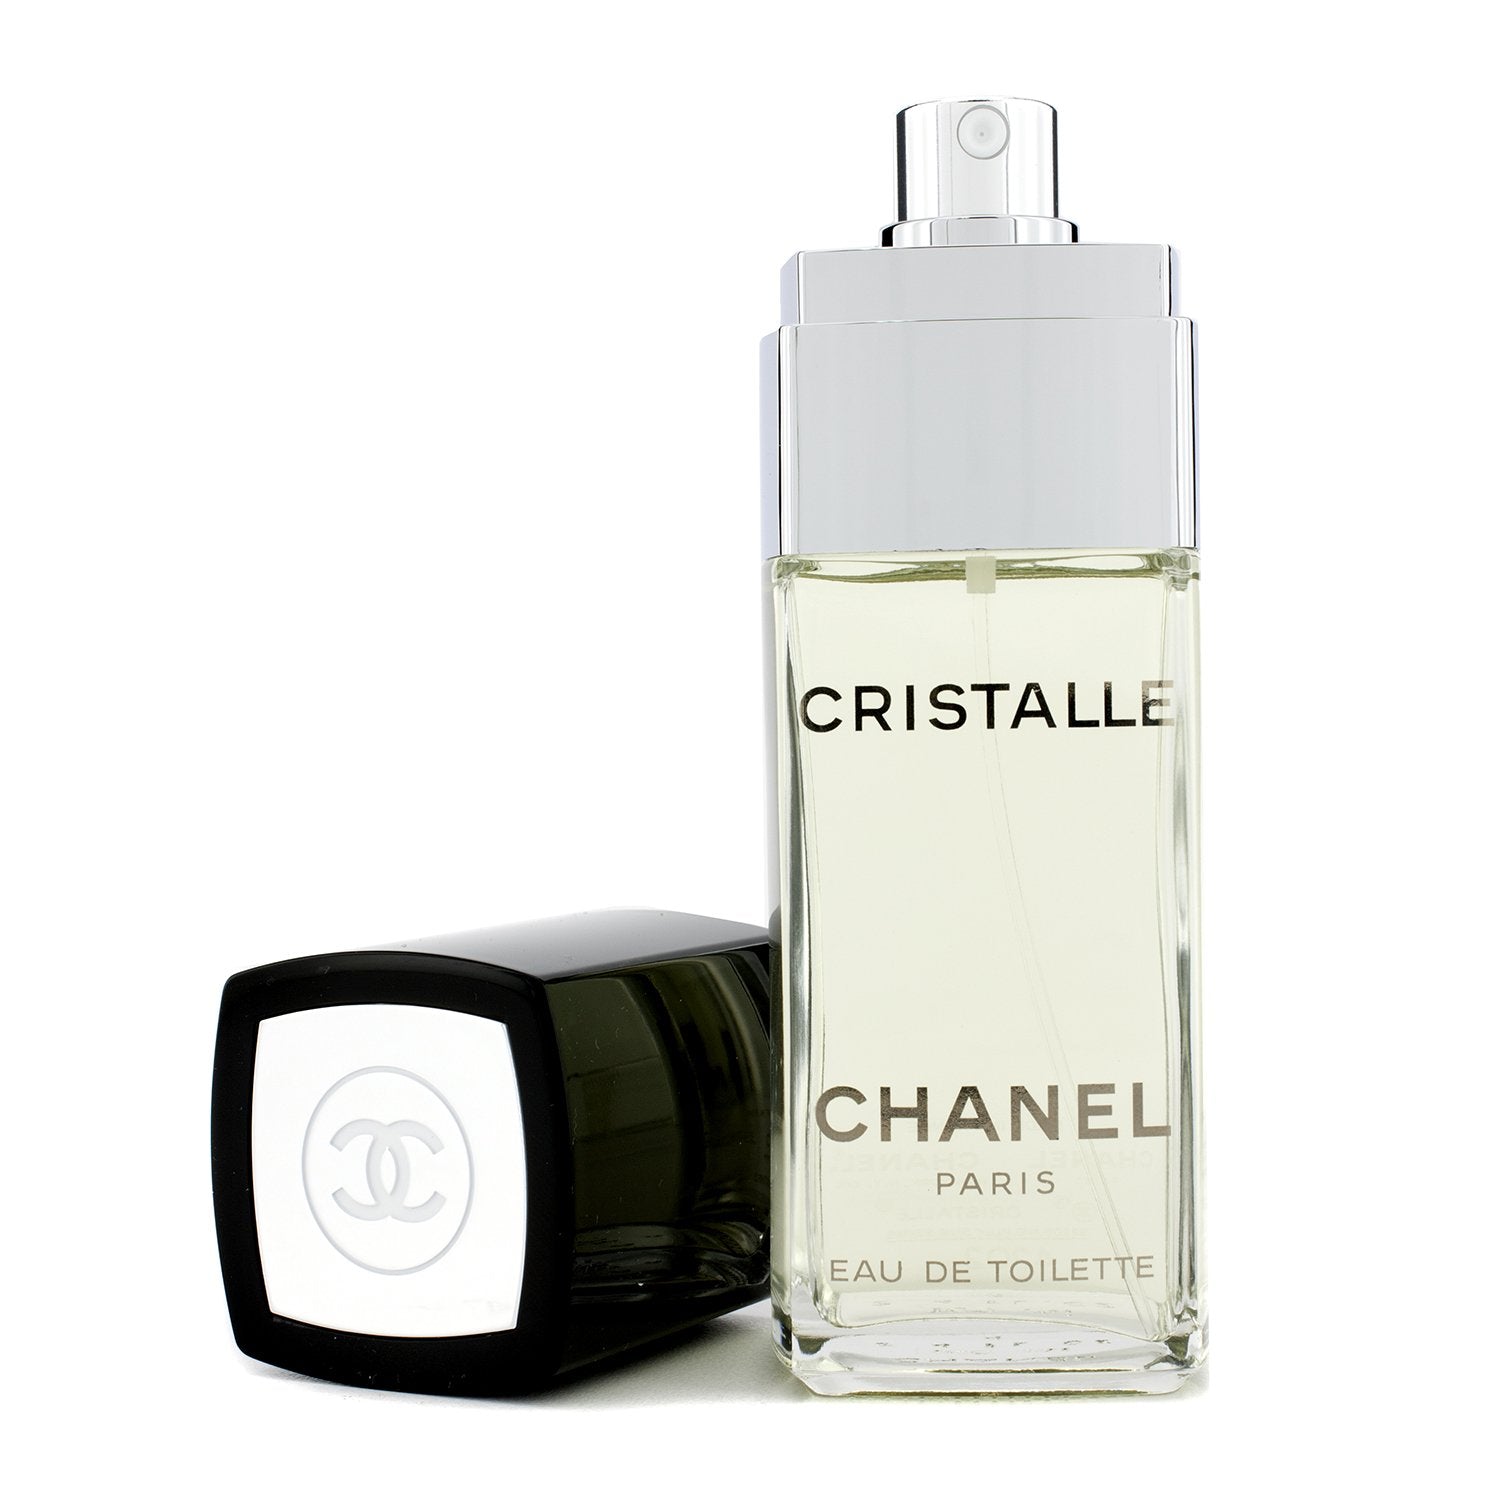 Chanel Cristalle Edt 118 Ml. Rare Vintage 1974. -  Denmark